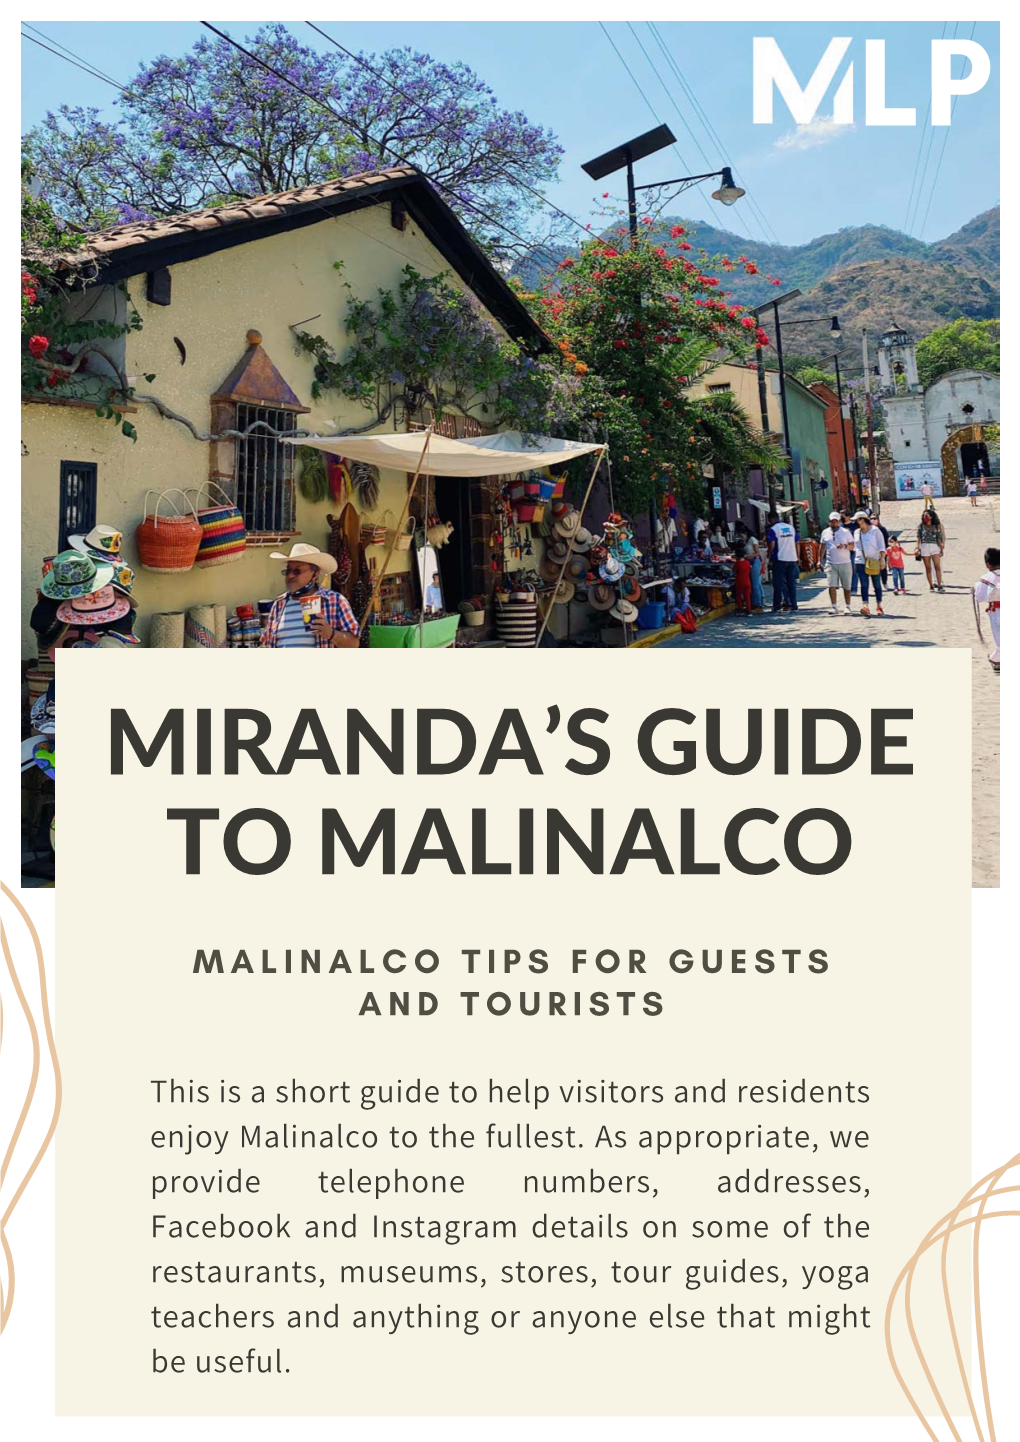 Miranda's Guide to Malinalco